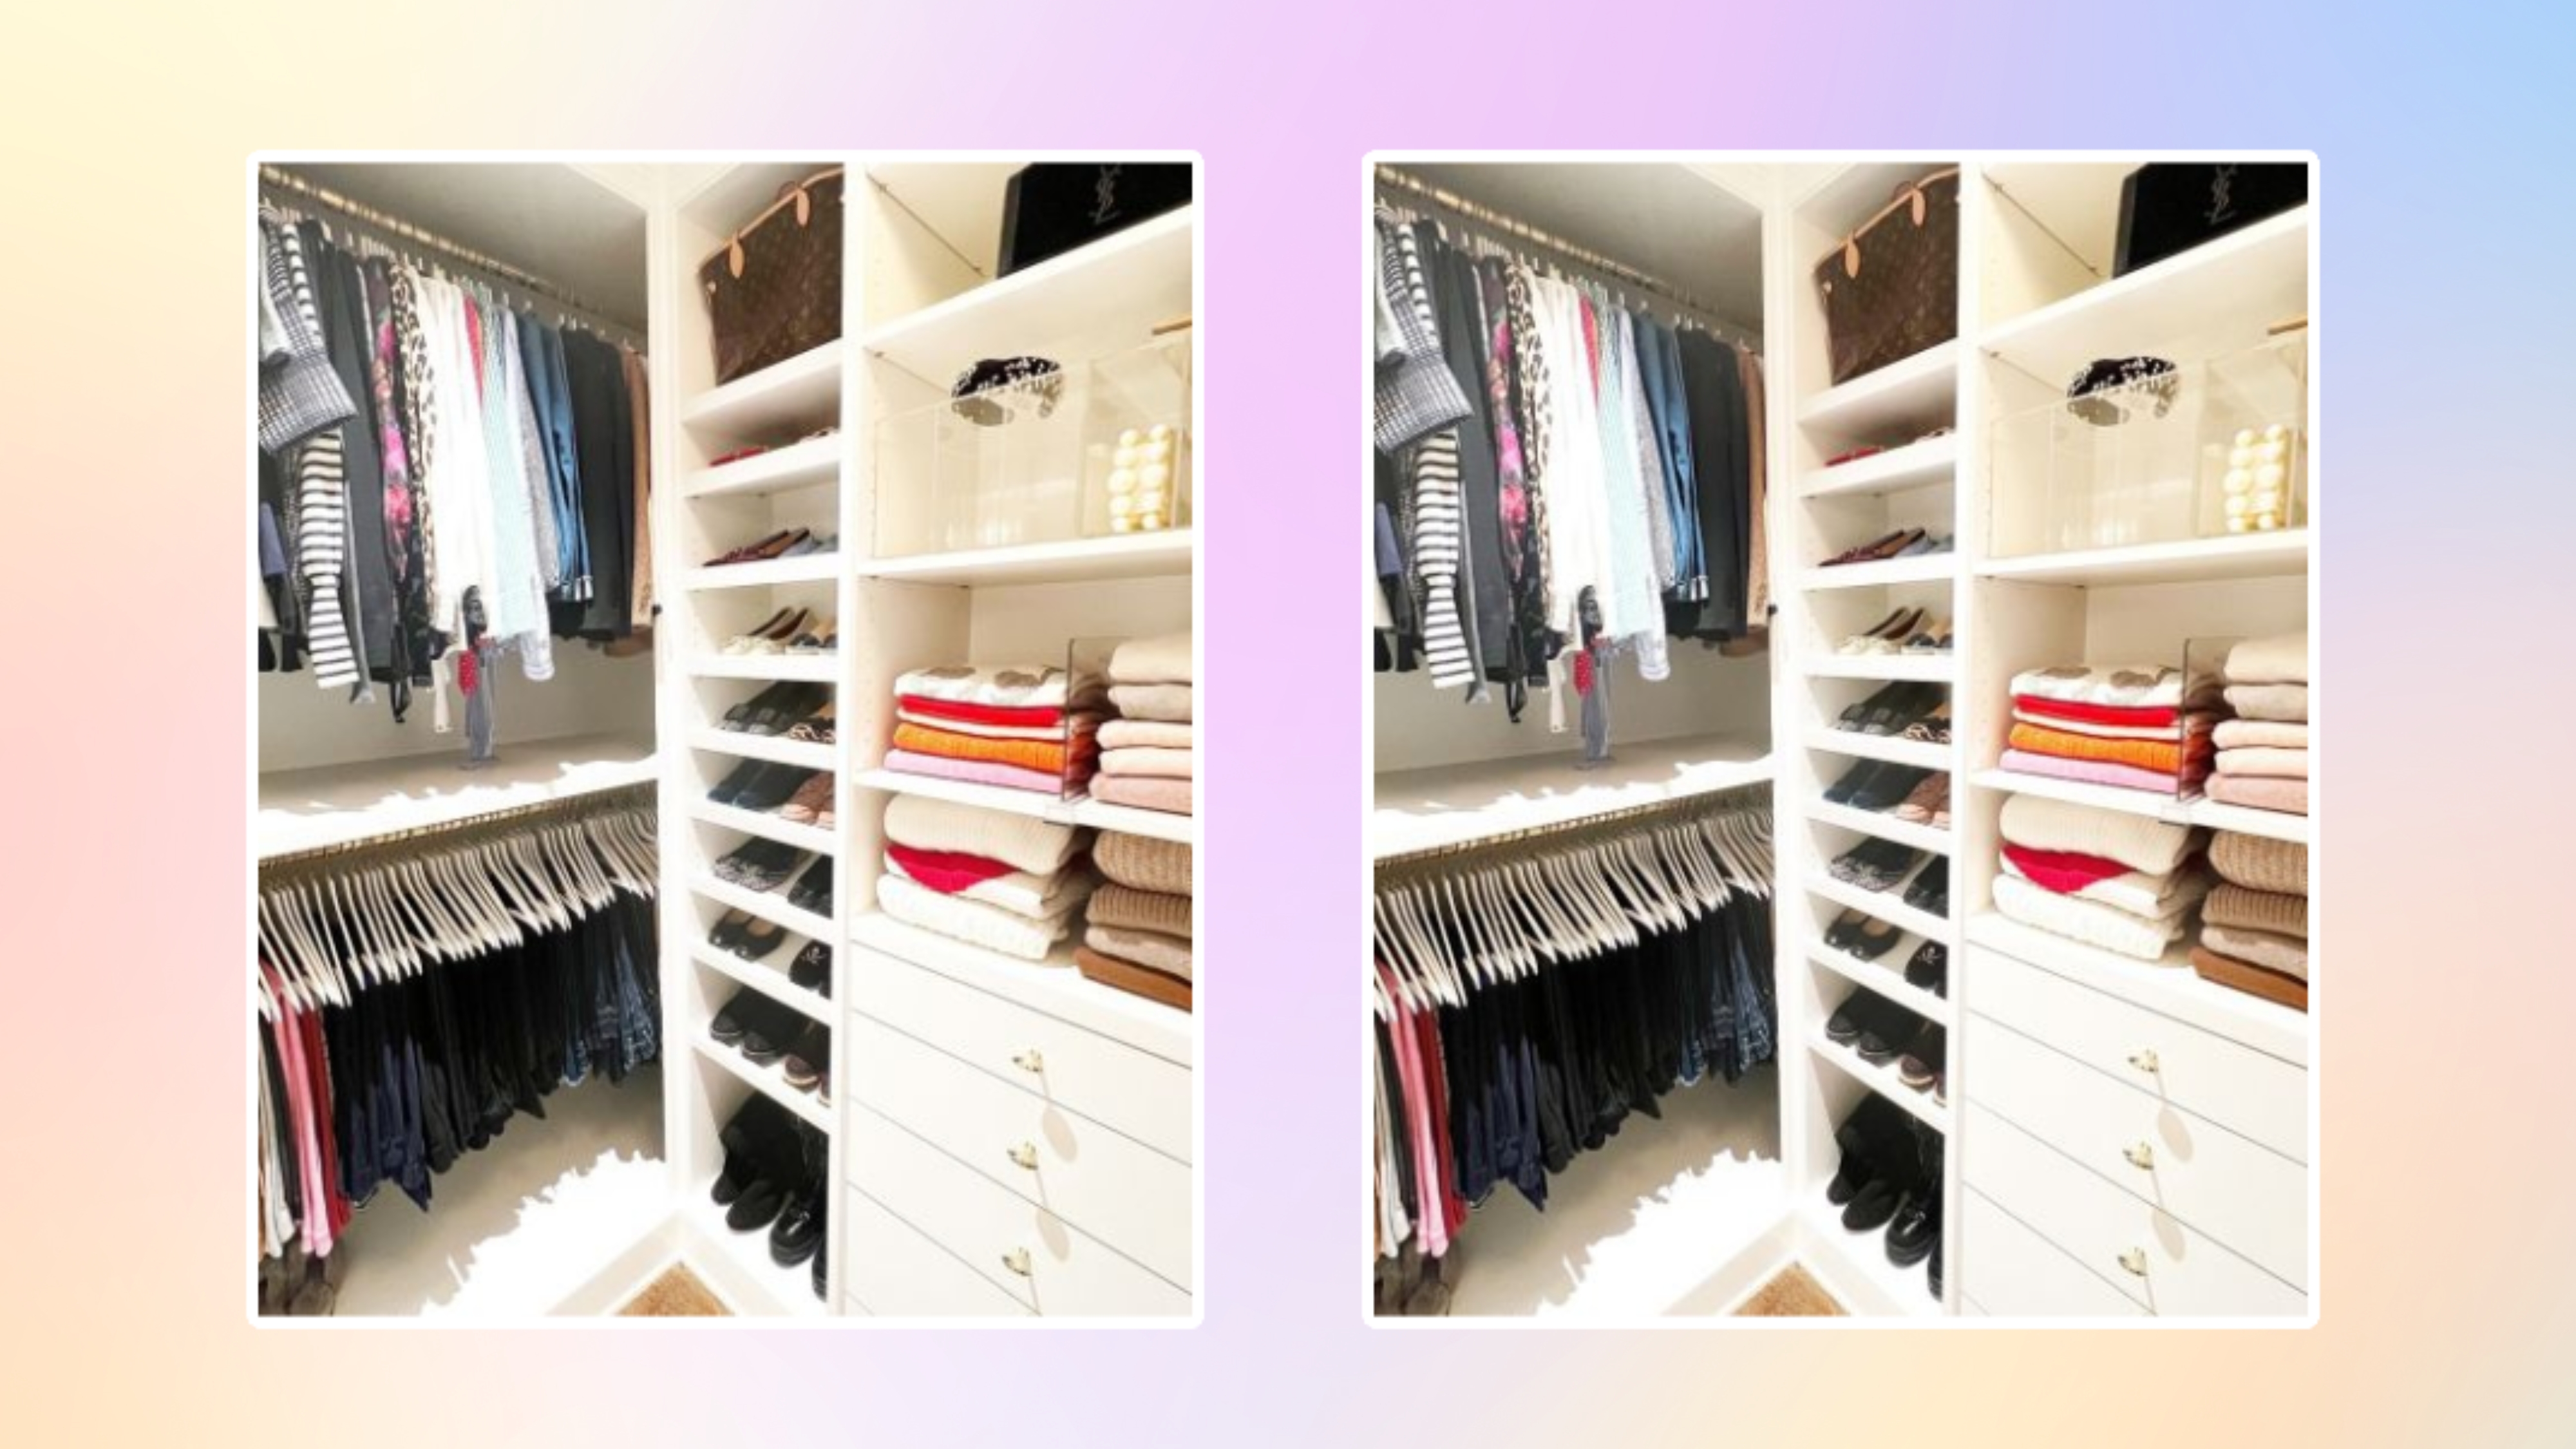 How to Organize a Small Closet